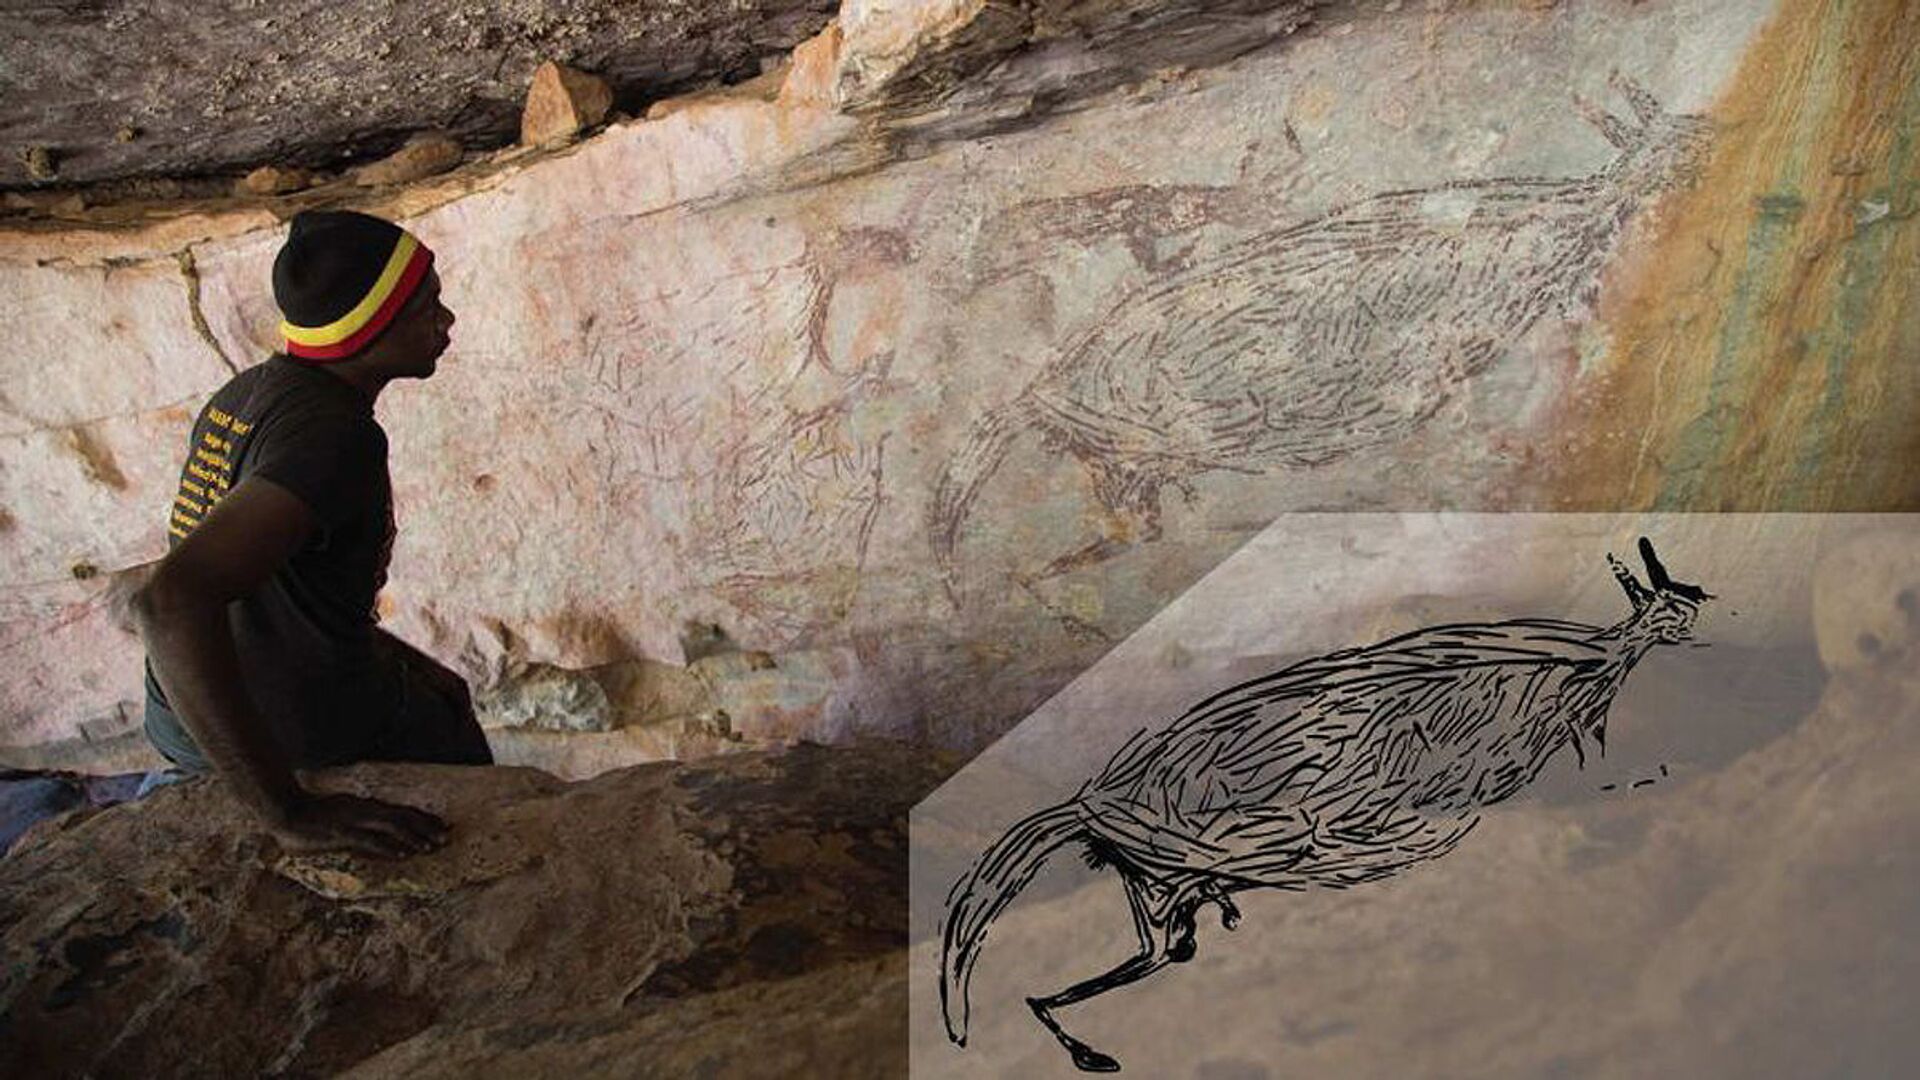 Canguru pintado há mais de 17 mil anos é a arte rupestre mais antiga da Austrália, diz estudo (FOTO) - Sputnik Brasil, 1920, 23.02.2021